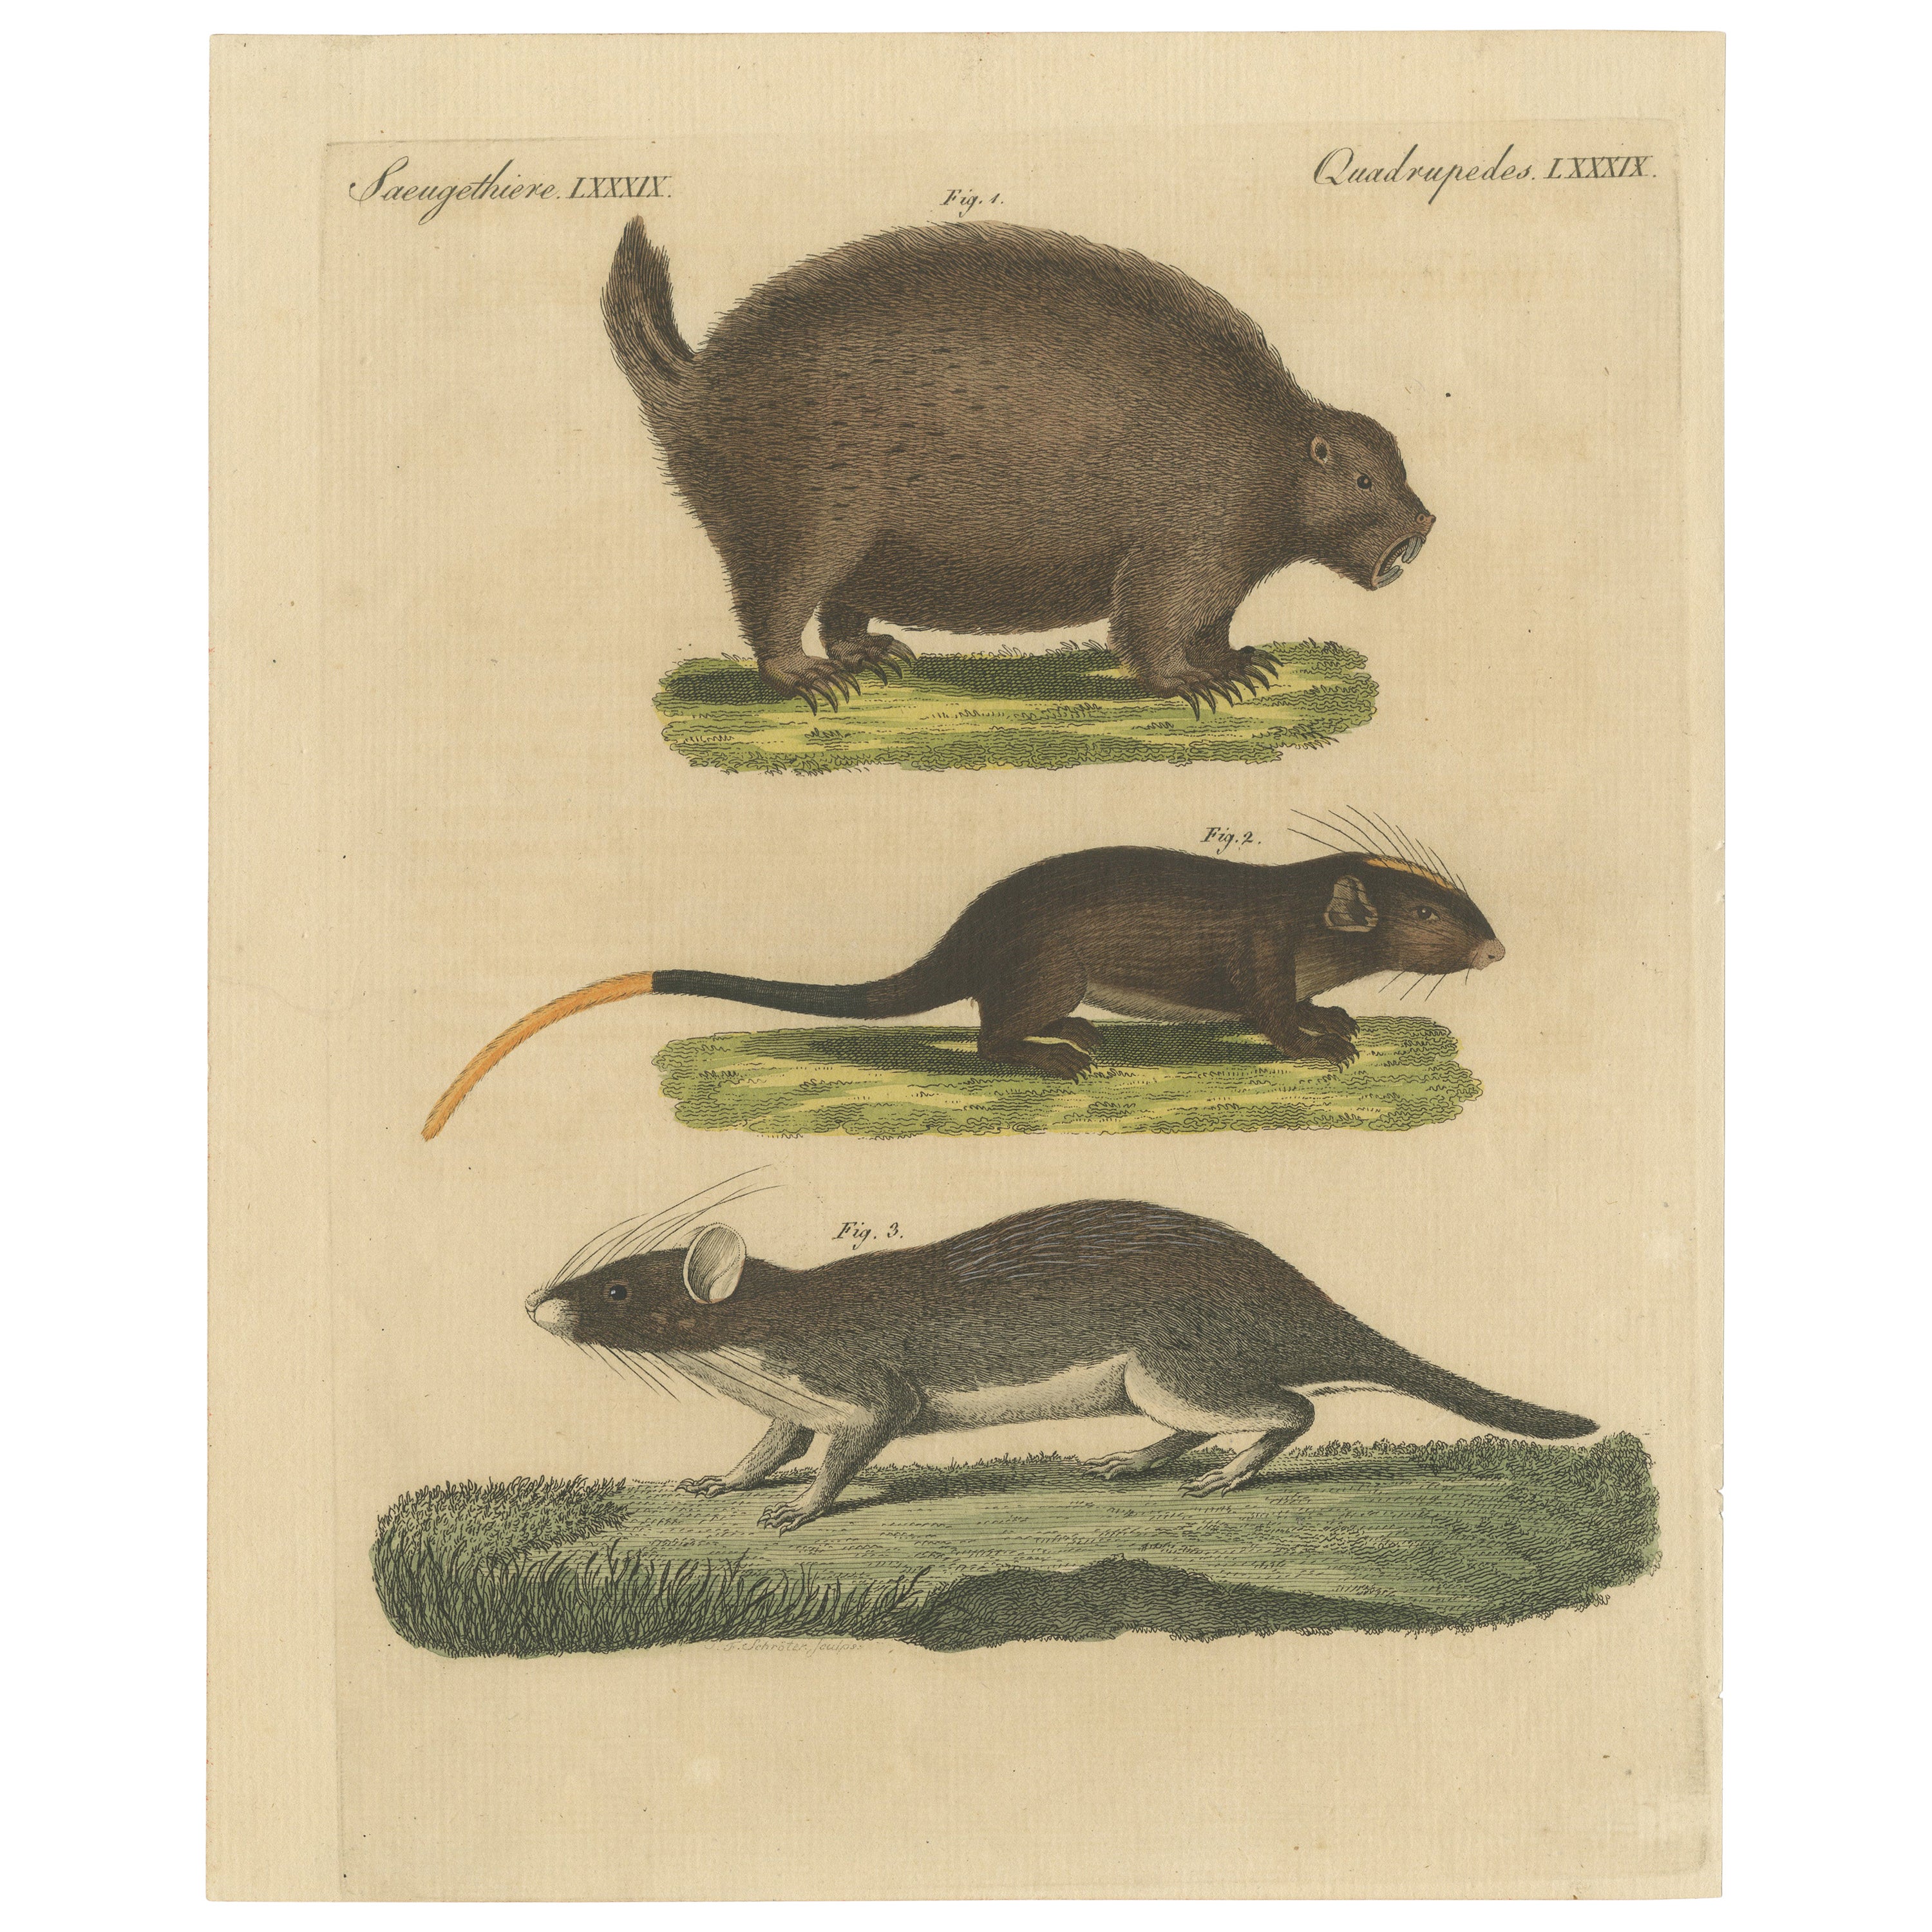 Impression d'origine ancienne d'une porcupine et d'autres grands rodents